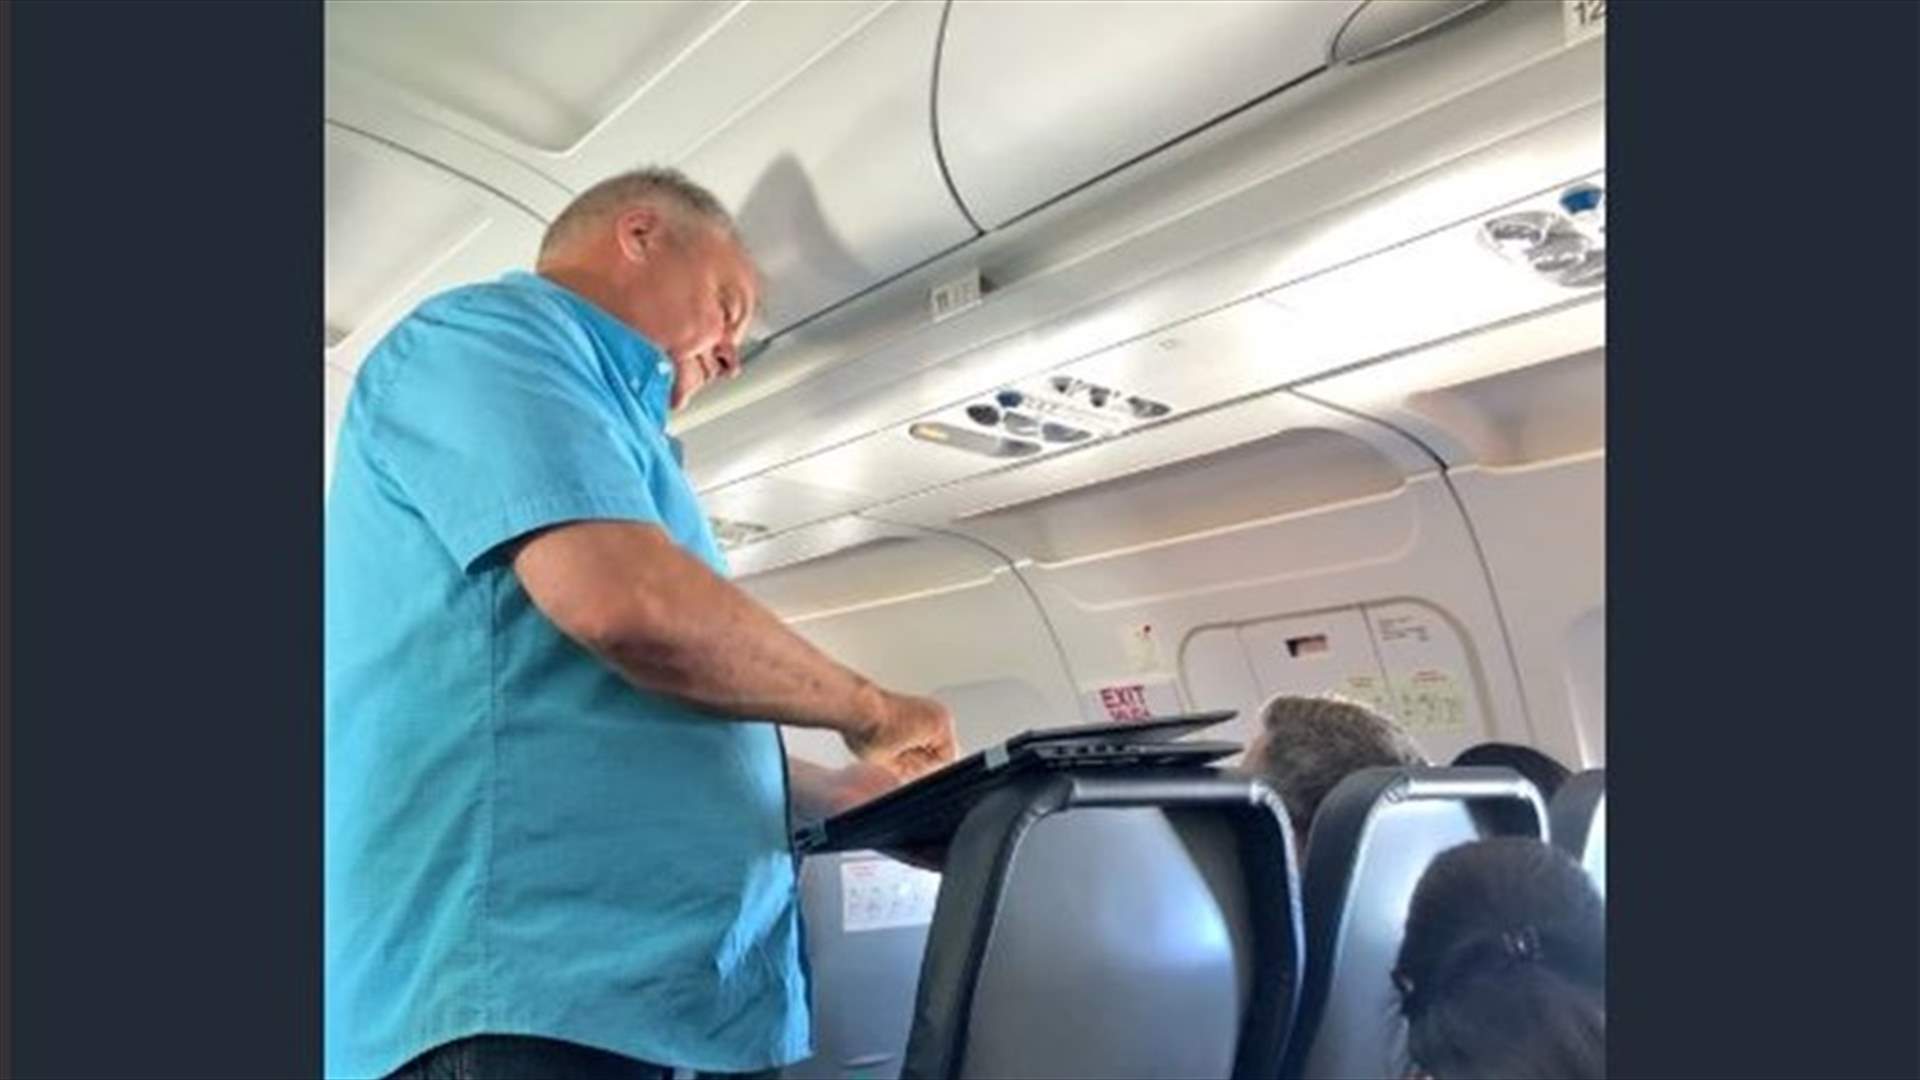 صور من داخل طائرة ضجّت بها الانترنت... رجل فاجأ الجميع بطريقة تعامله مع طفلة